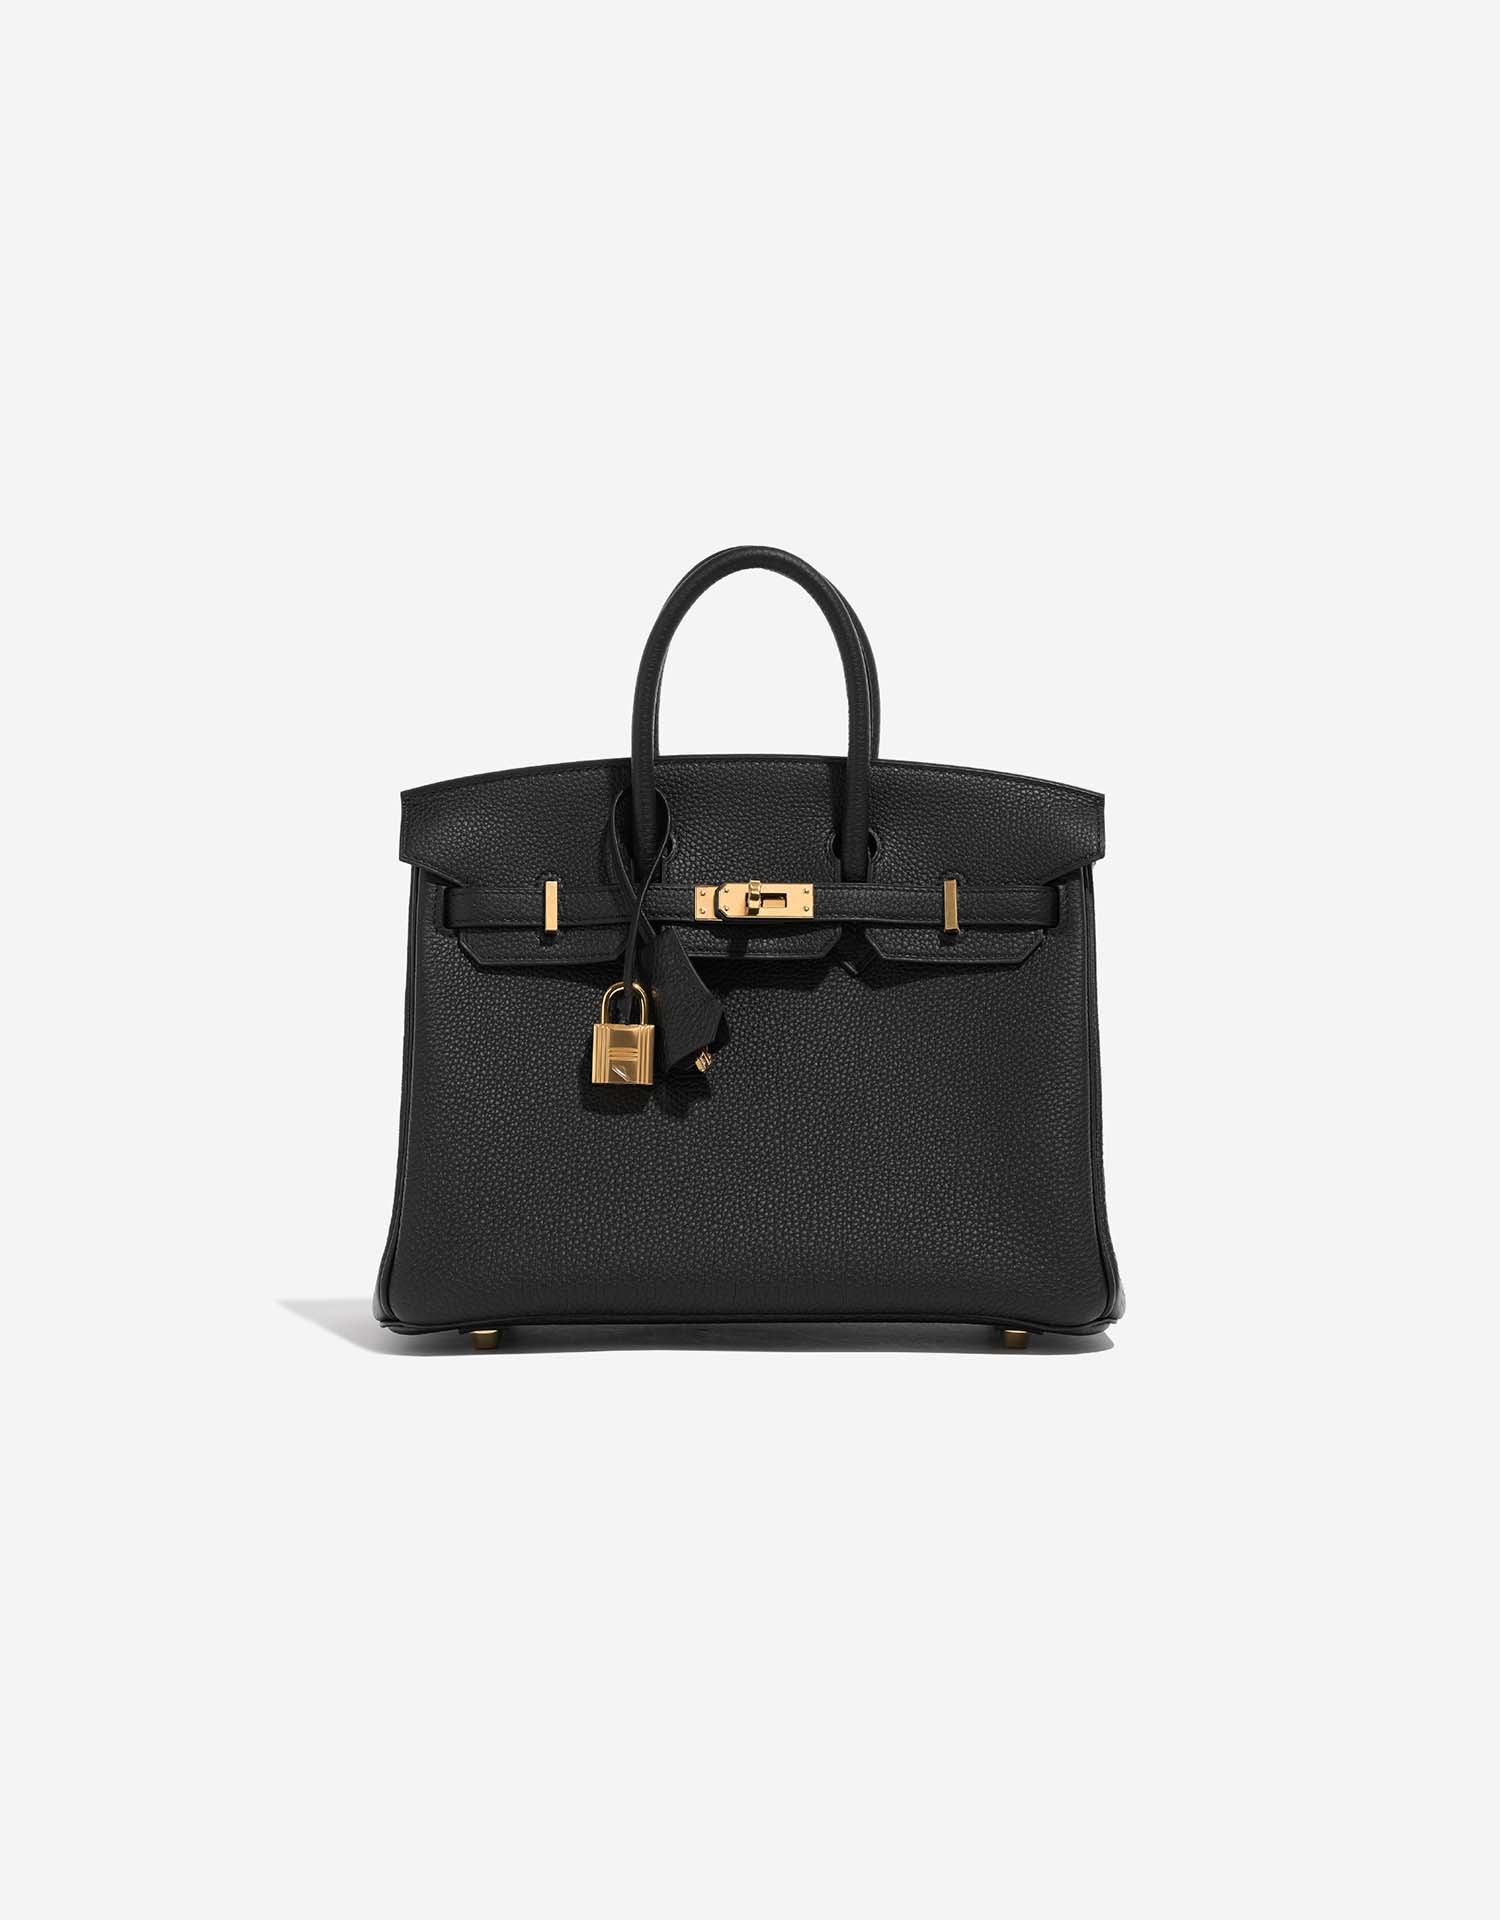 Hermès Birkin 25 Black Togo with Gold Hardware Bag For Sale at